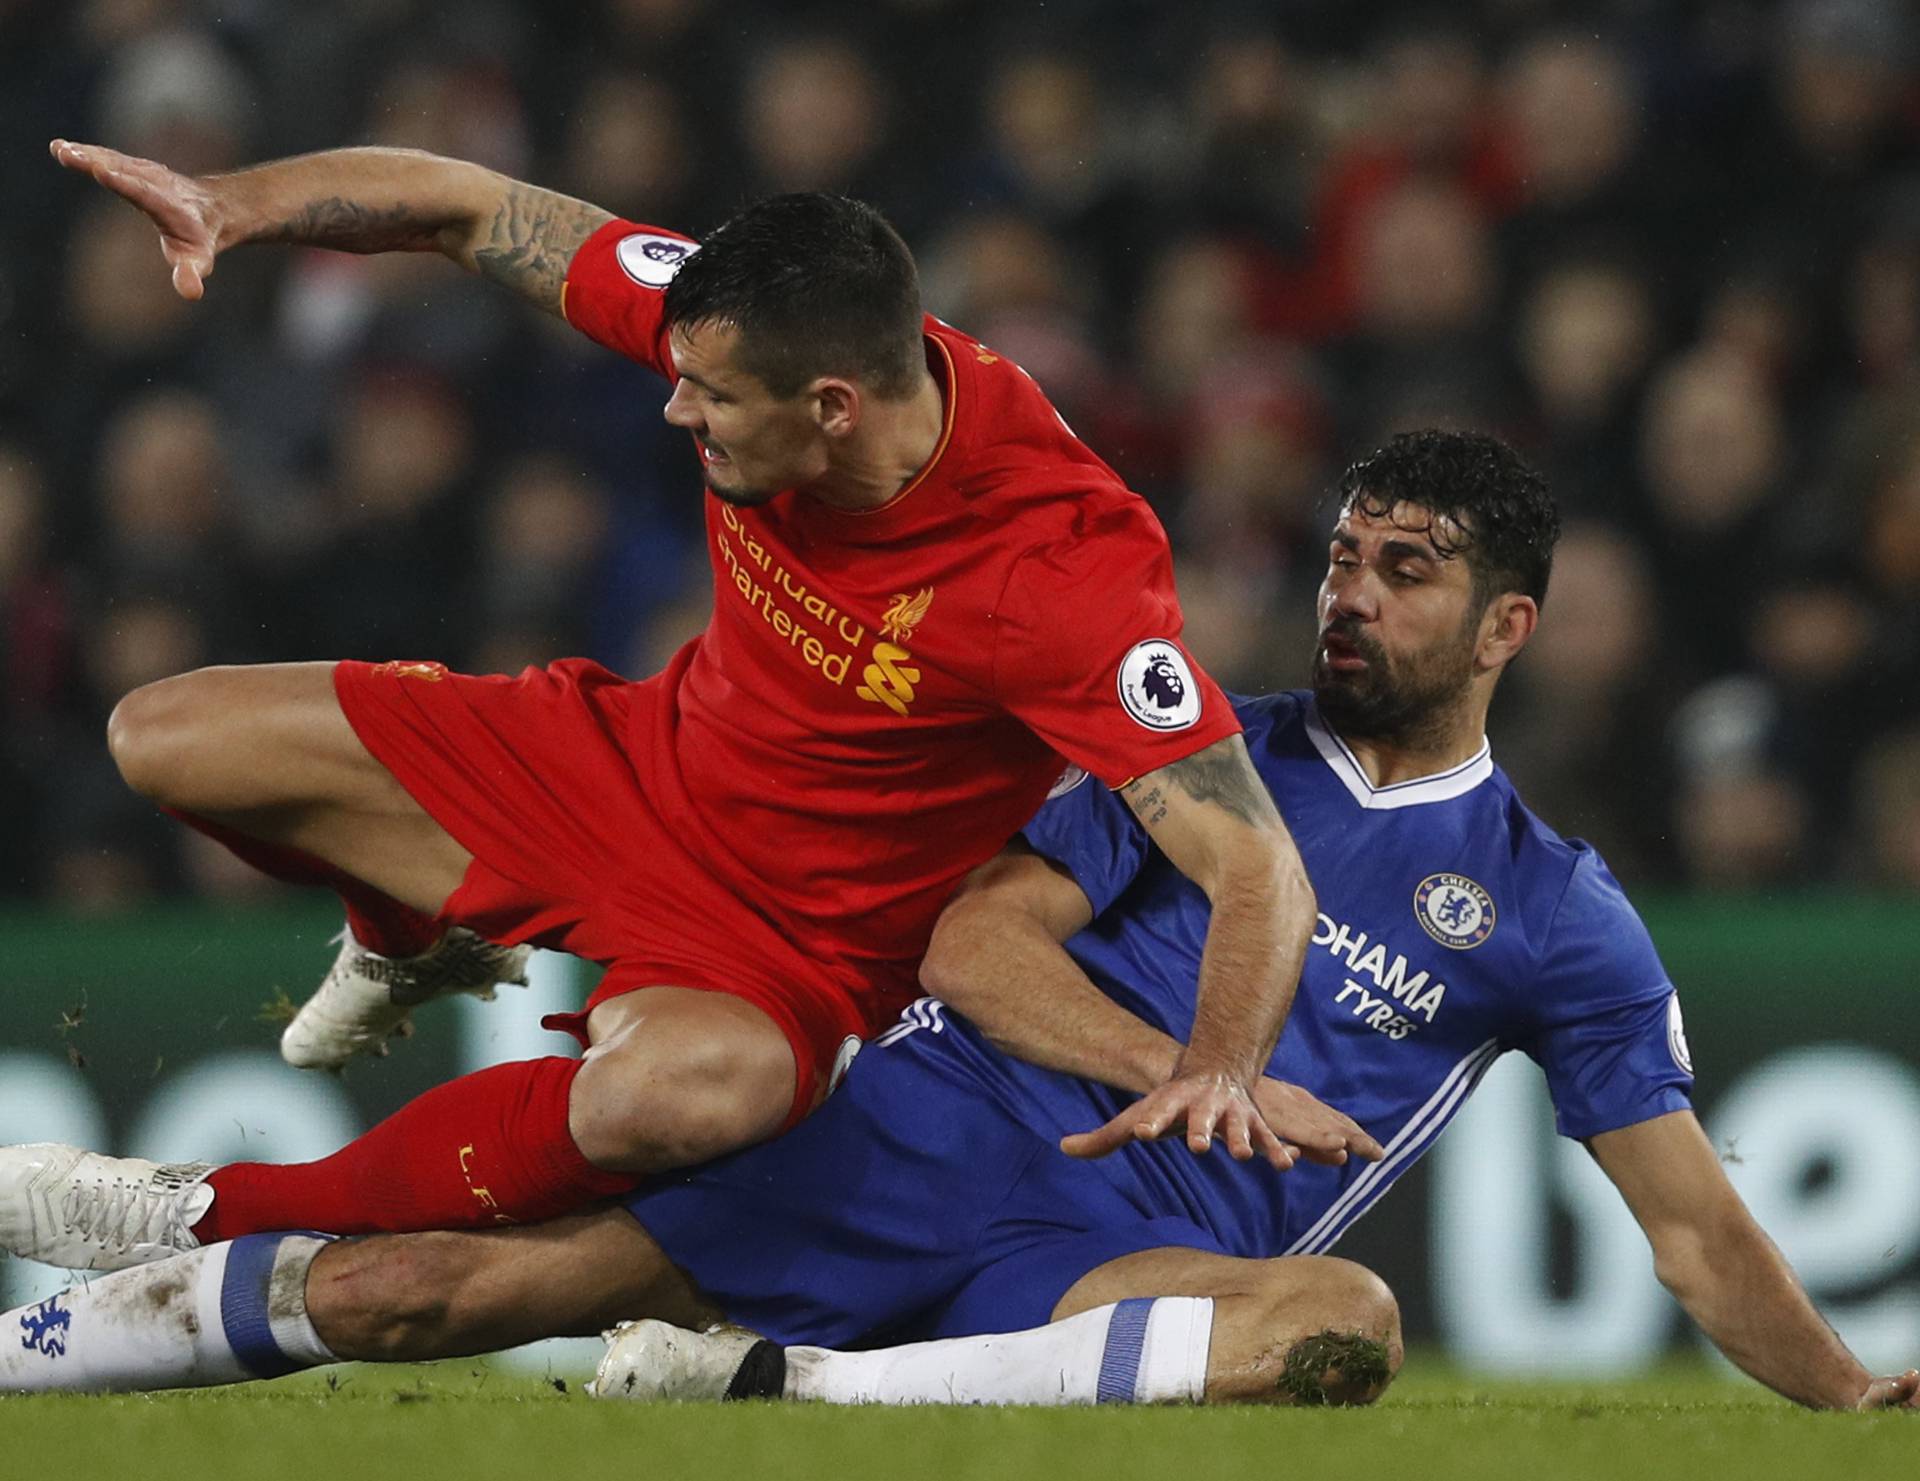 Liverpool's Dejan Lovren in action with Chelsea's Diego Costa